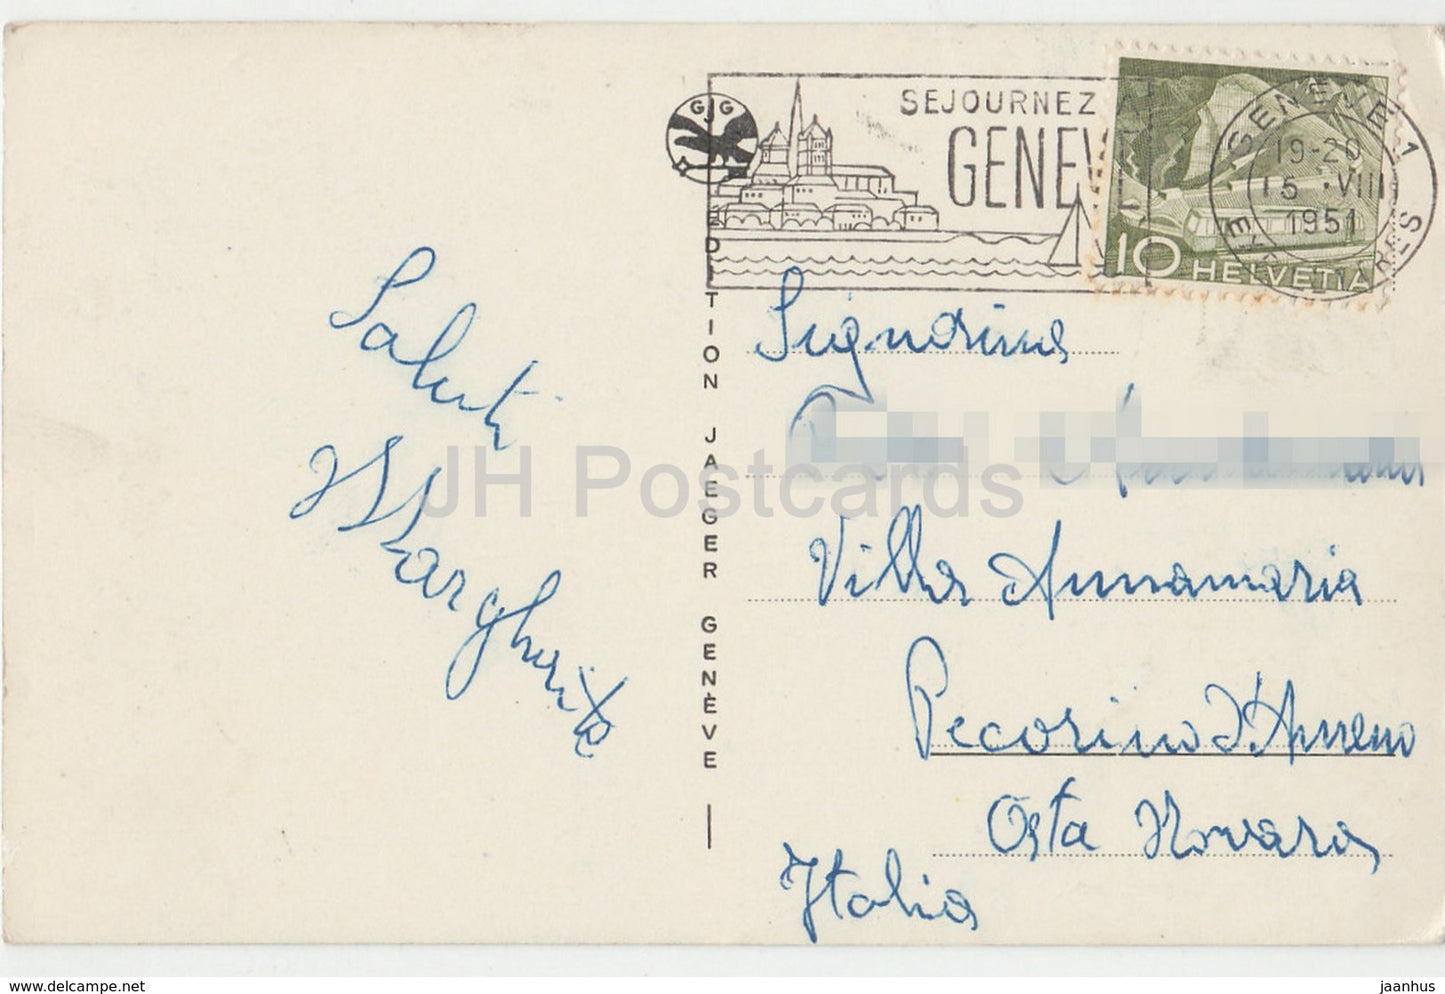 Geneve - Genève - Souvenir de Geneve - La Rade - bateau - pont - multiview - 6043 - Suisse - 1951 - occasion